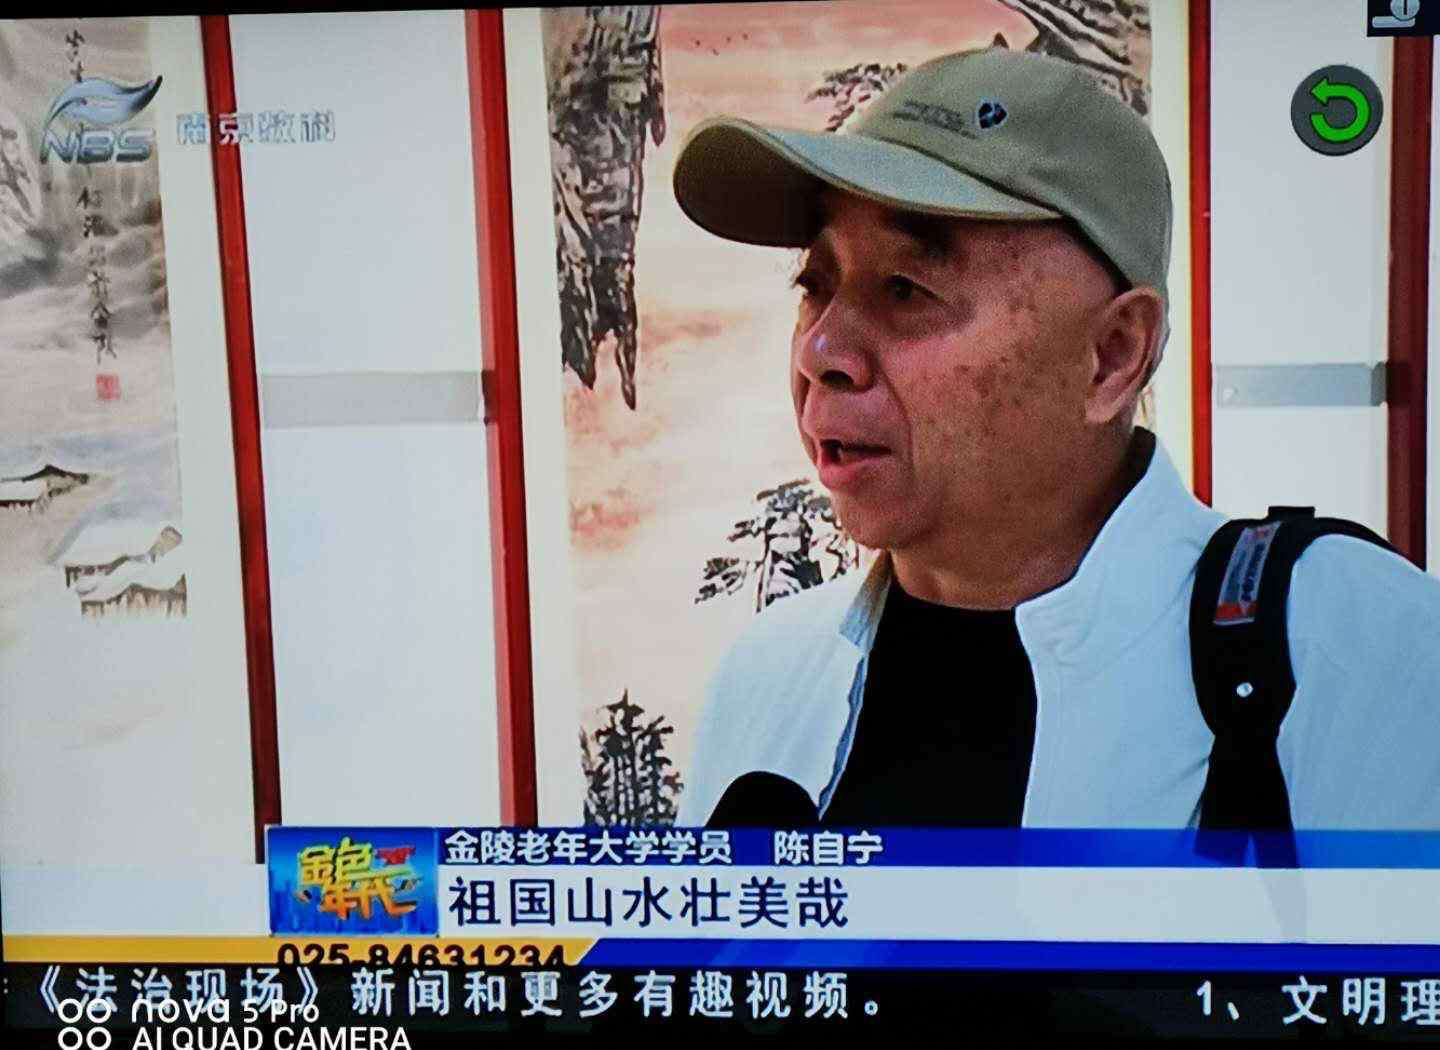 南京电视台生活频道 南京电视台生活频道金色年代播出画展画面